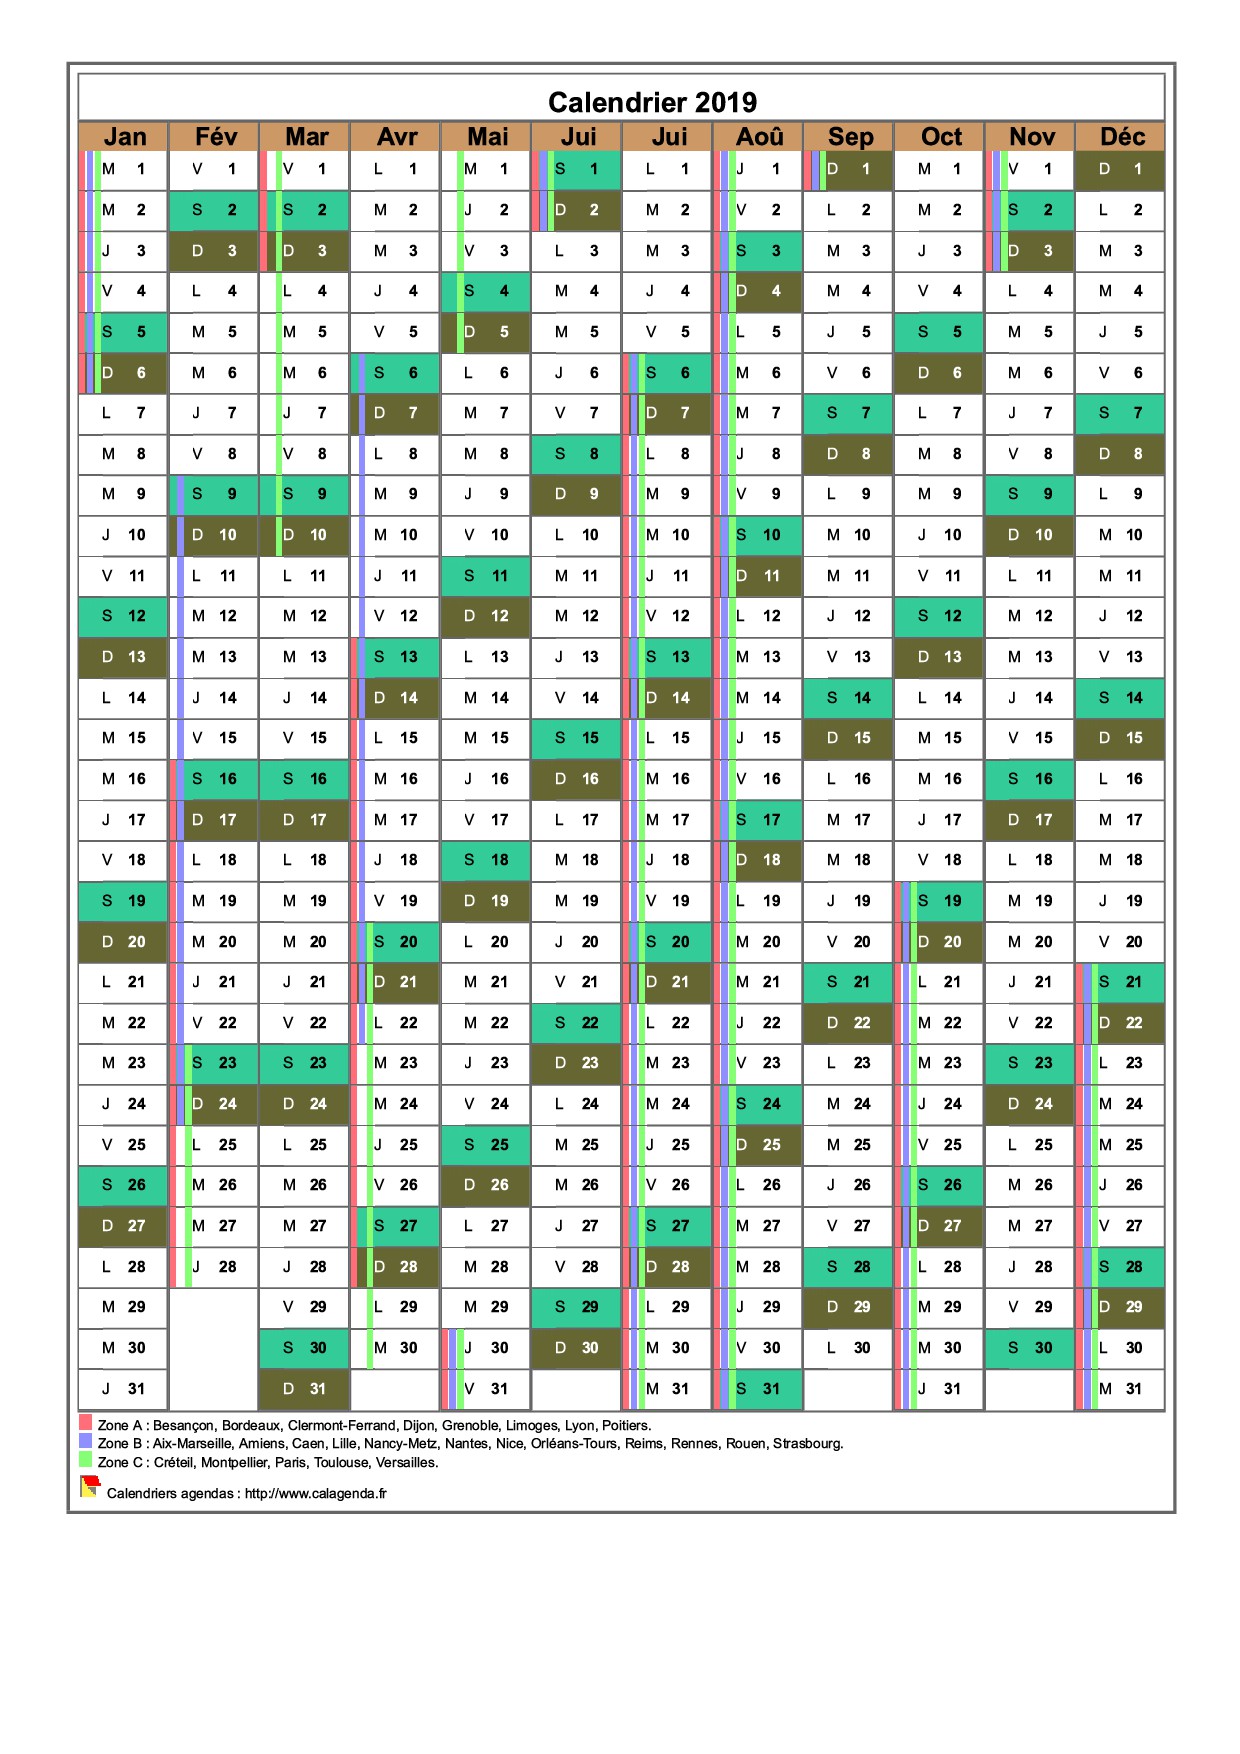 Calendrier 2019 annuel, 12 colonnes, avec les vacances scolaires